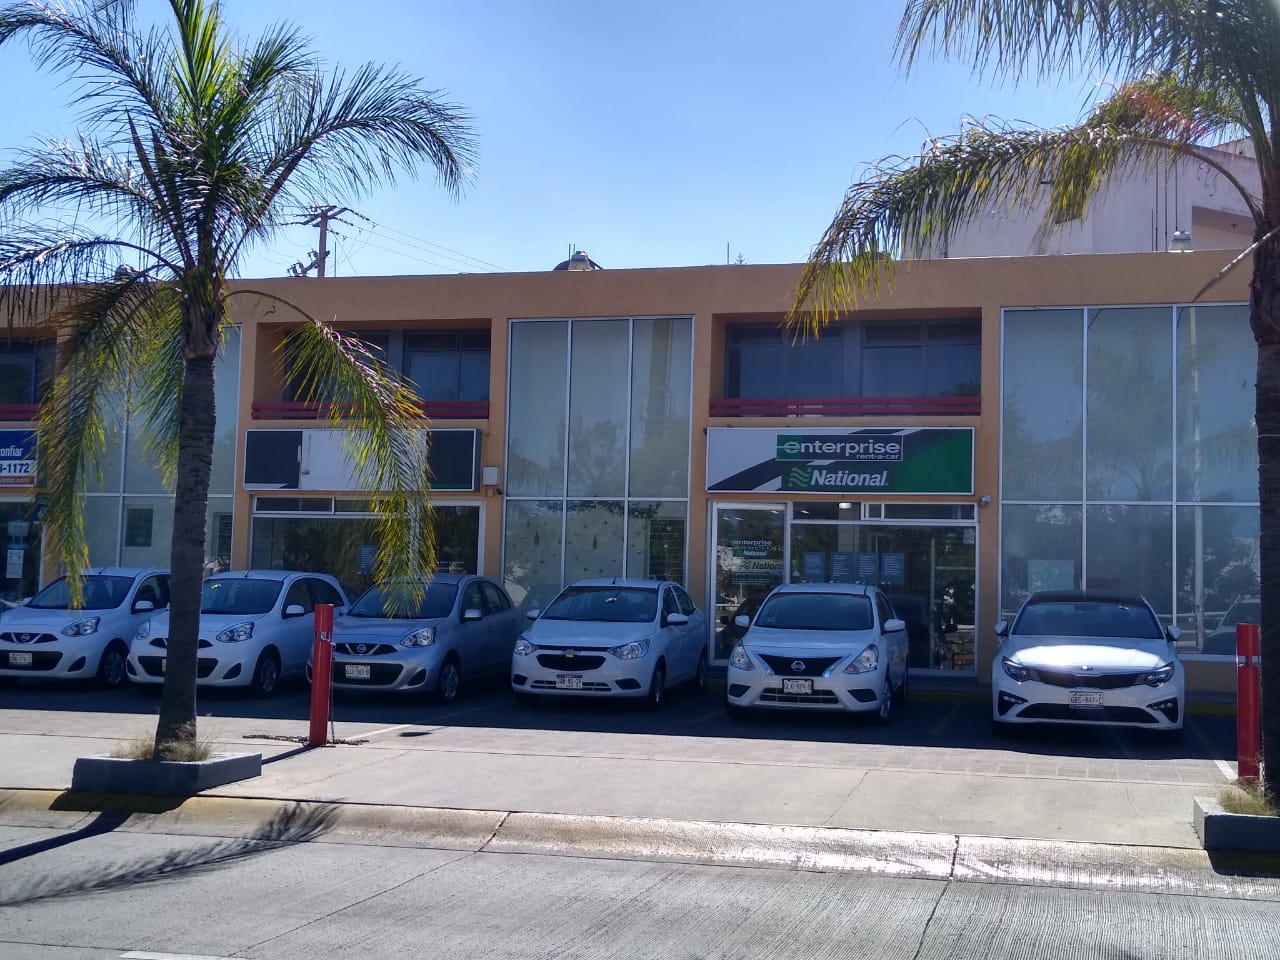 Renta de Autos en Guadalajara